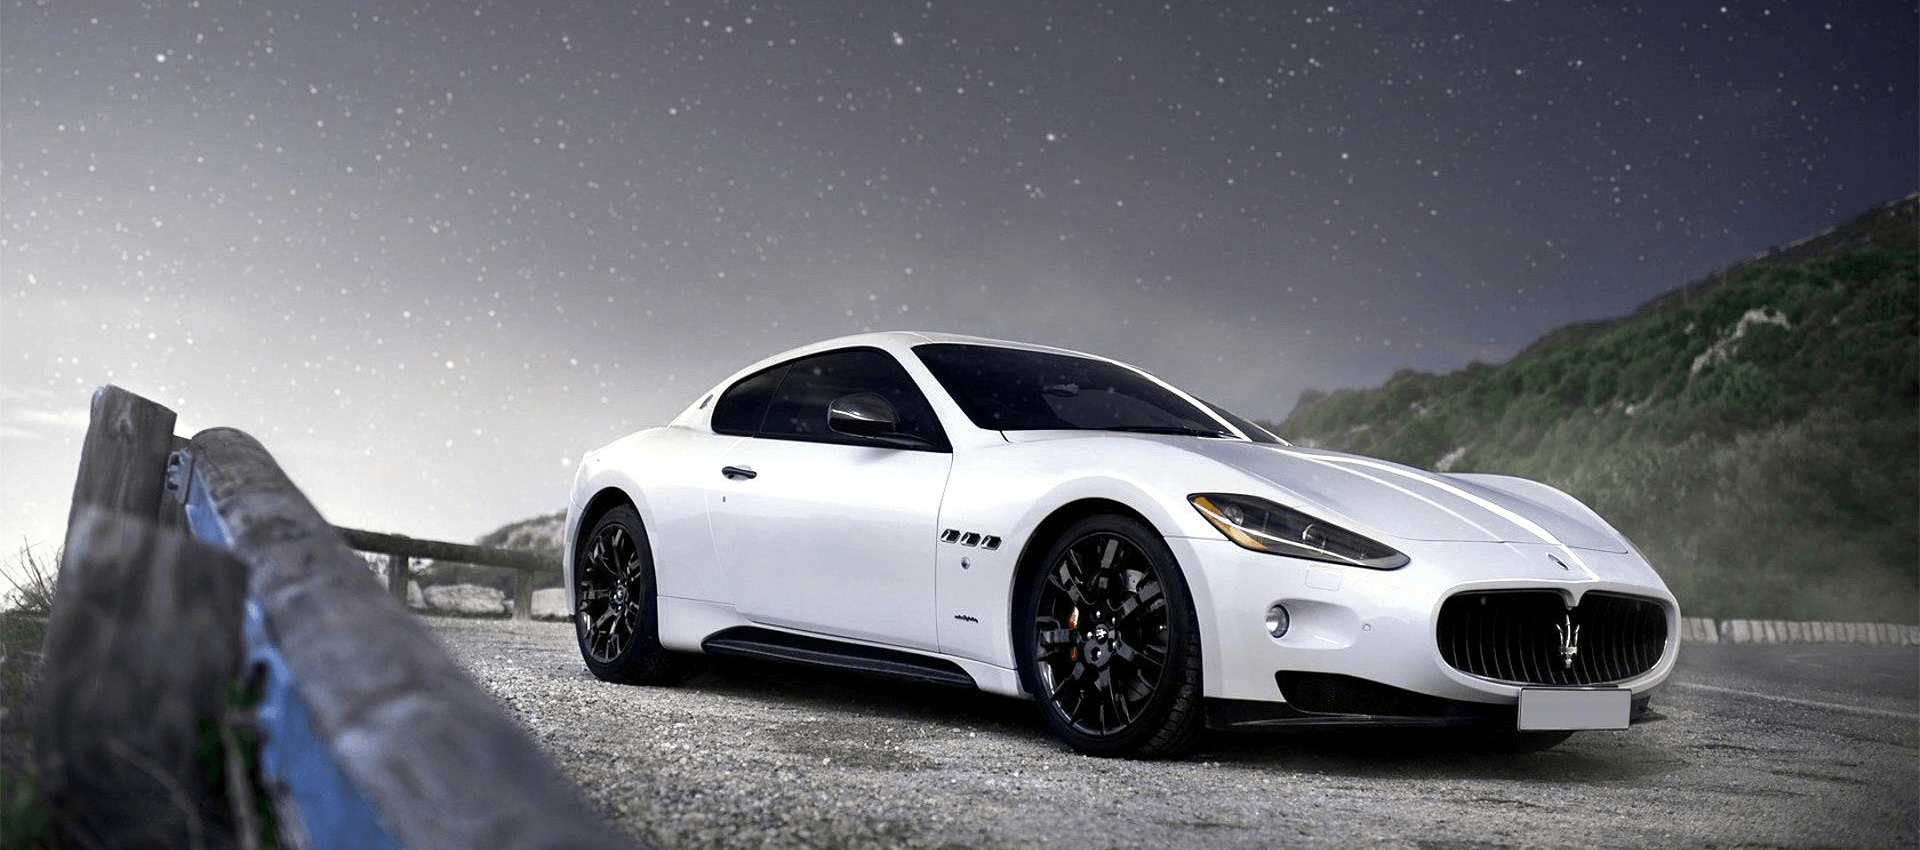 Maserati GranTurismo bianca